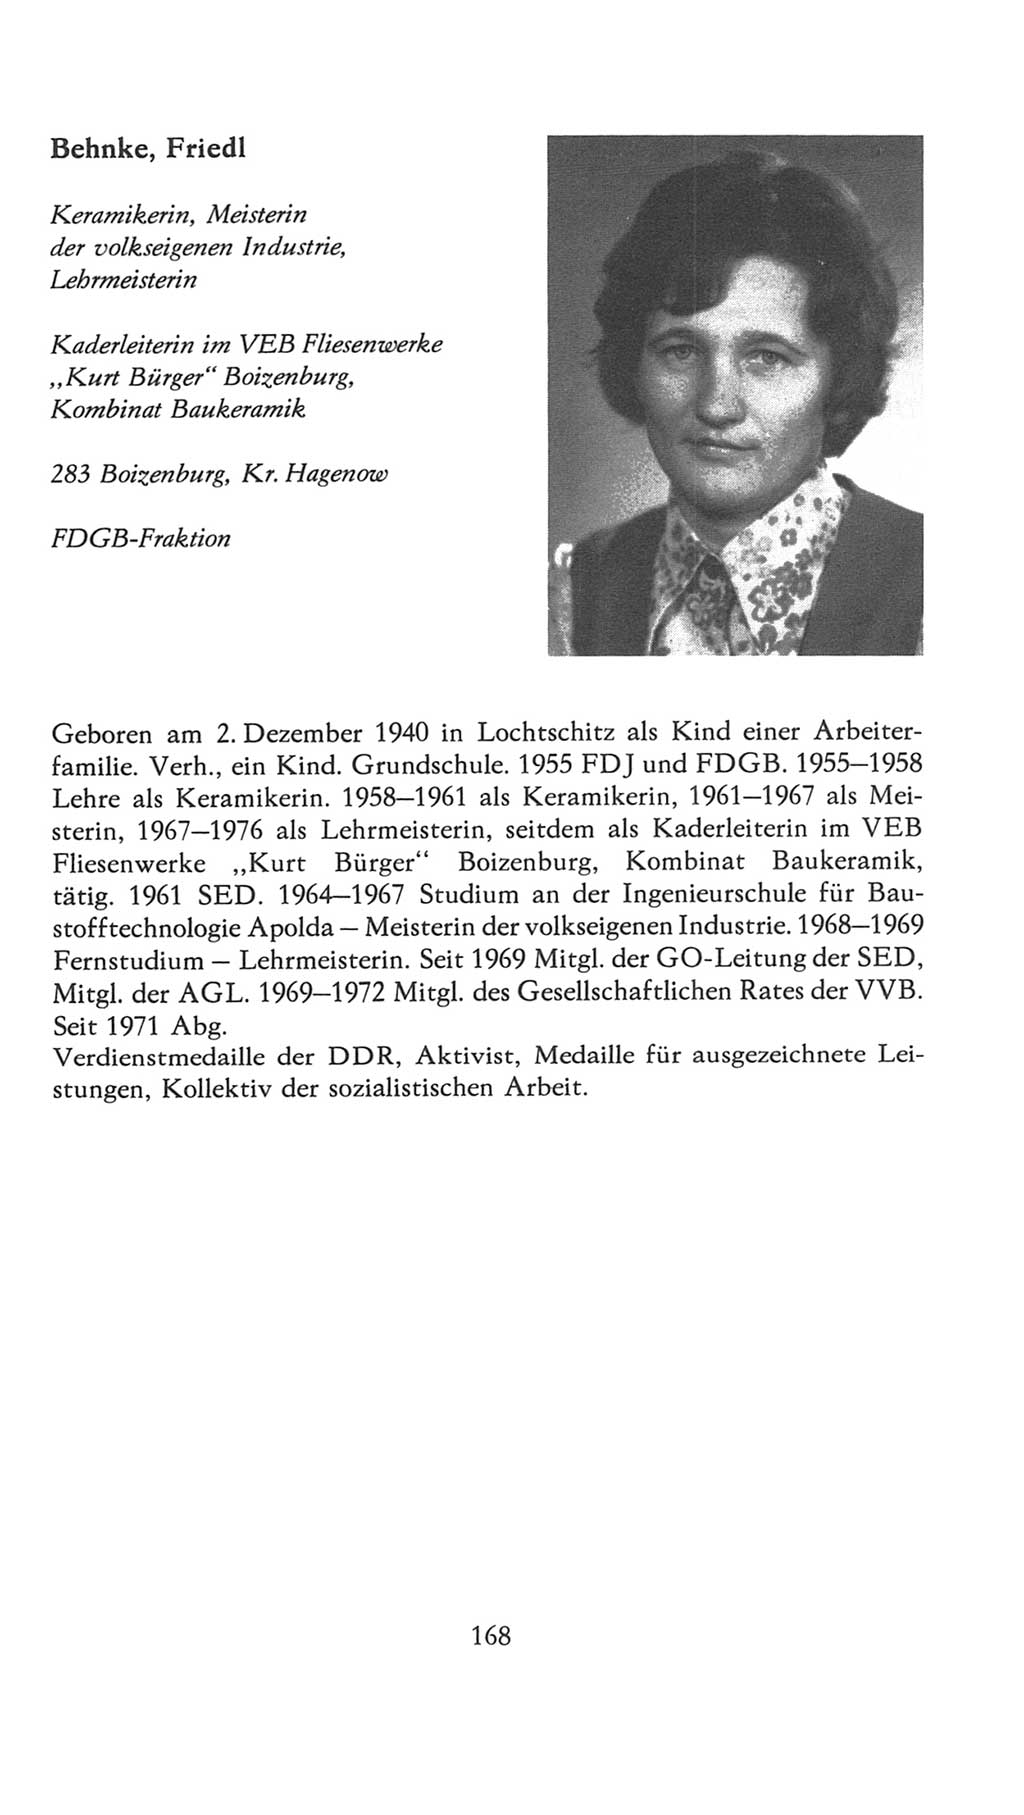 Volkskammer (VK) der Deutschen Demokratischen Republik (DDR), 7. Wahlperiode 1976-1981, Seite 168 (VK. DDR 7. WP. 1976-1981, S. 168)